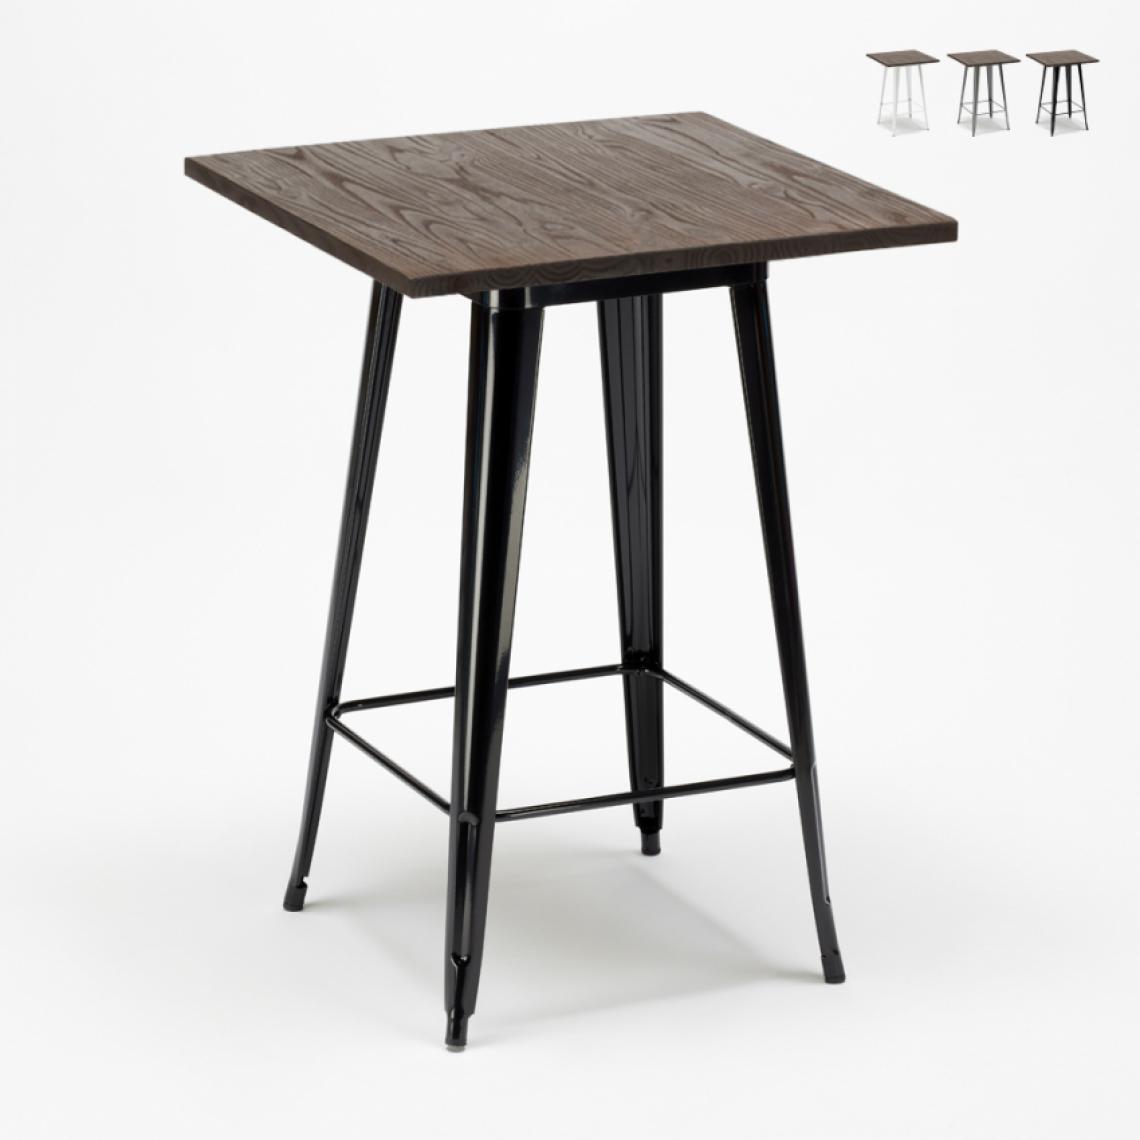 Ahd Amazing Home Design - Table haute pour tabourets Tolix industriel en métal acier et bois 60x60 Welded, Couleur: Noir - Tables à manger